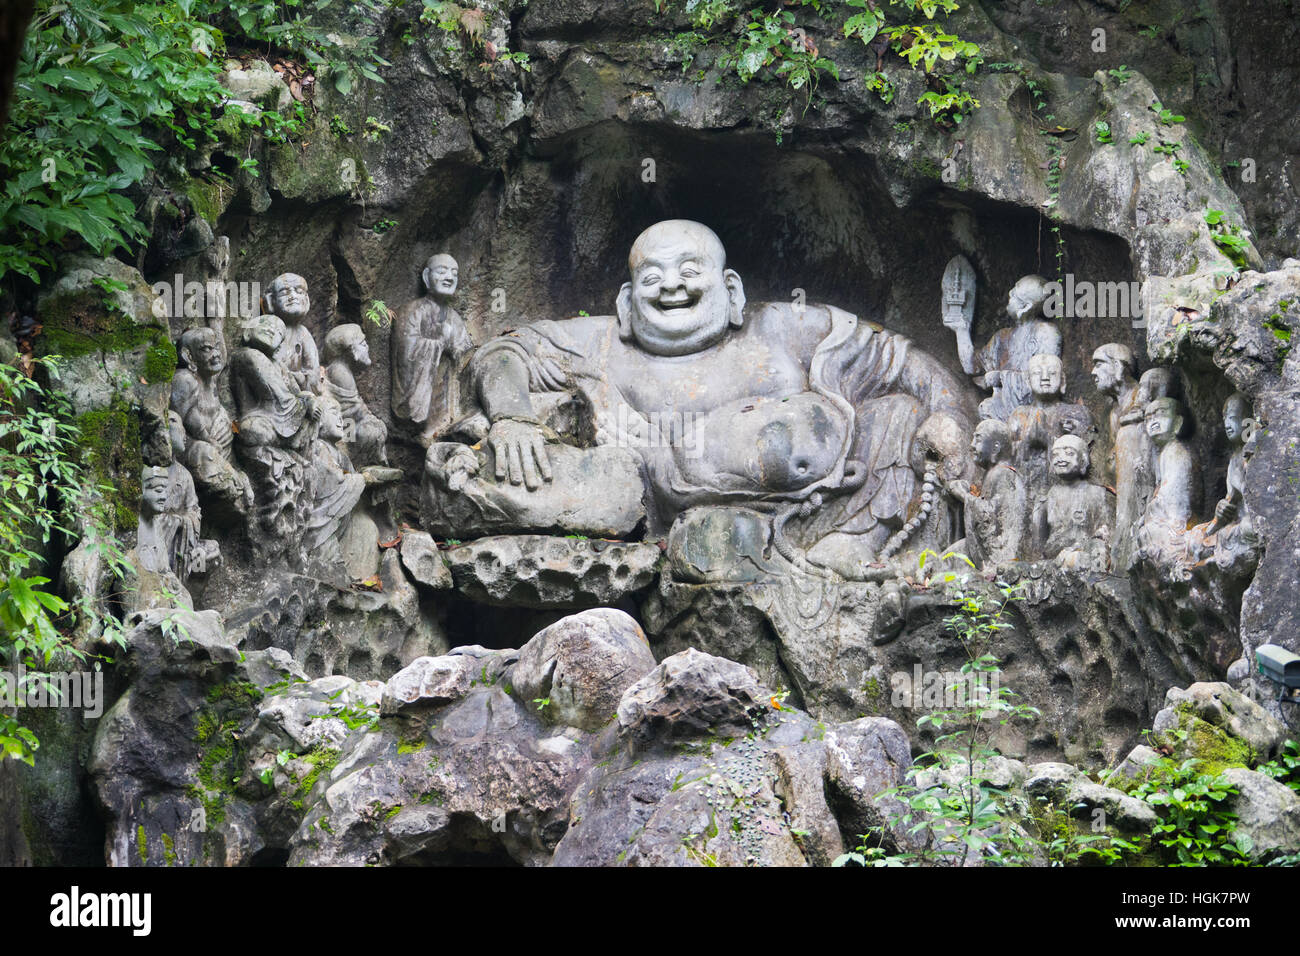 Laughing Buddha, Feilai Feng limestone grottoes at Ling Yin temple Hangzhou China Stock Photo